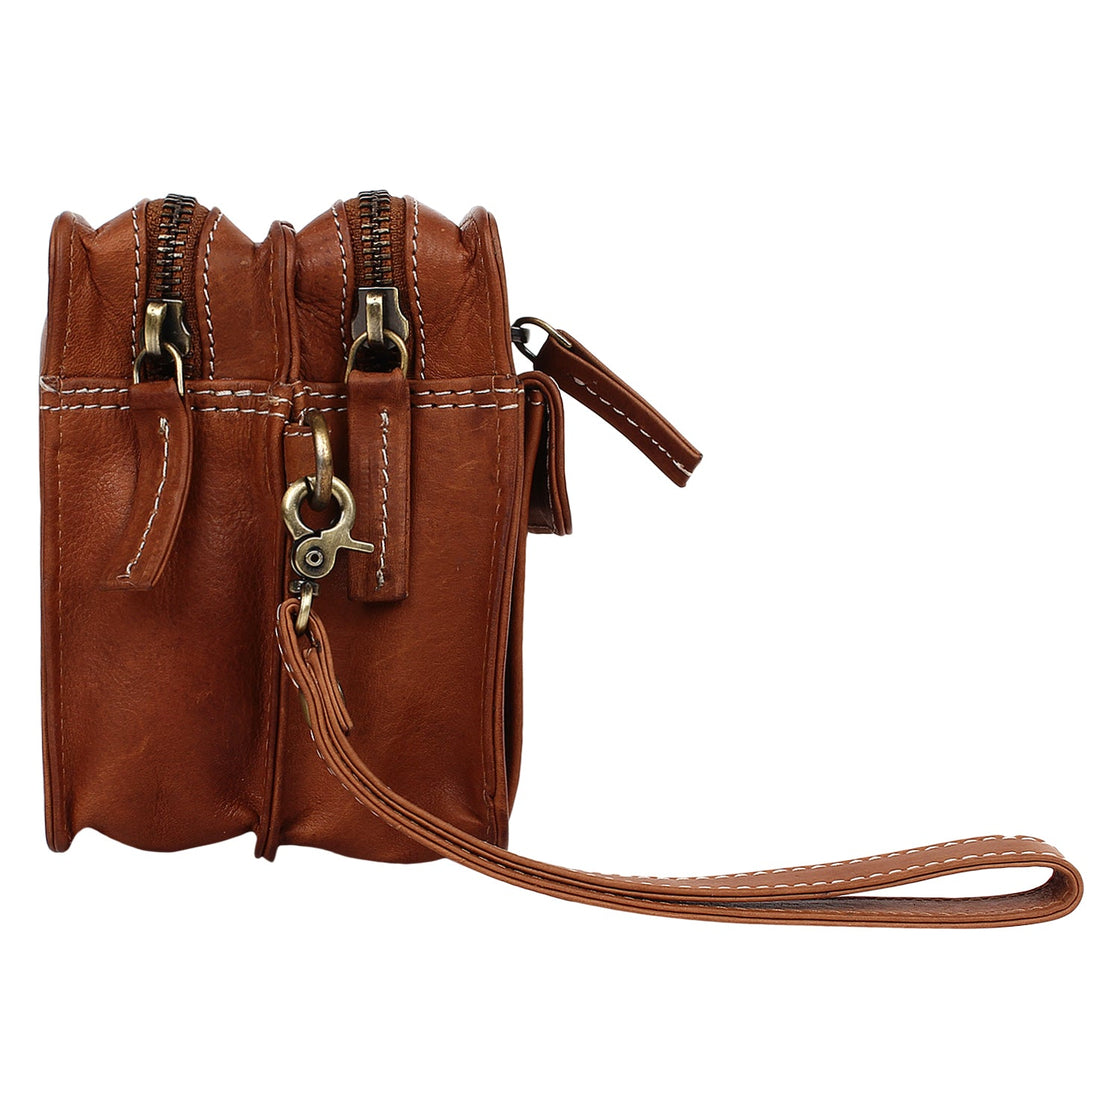 Leather Hand Pouch Men Purse Wallet Clutch Wrist Bag